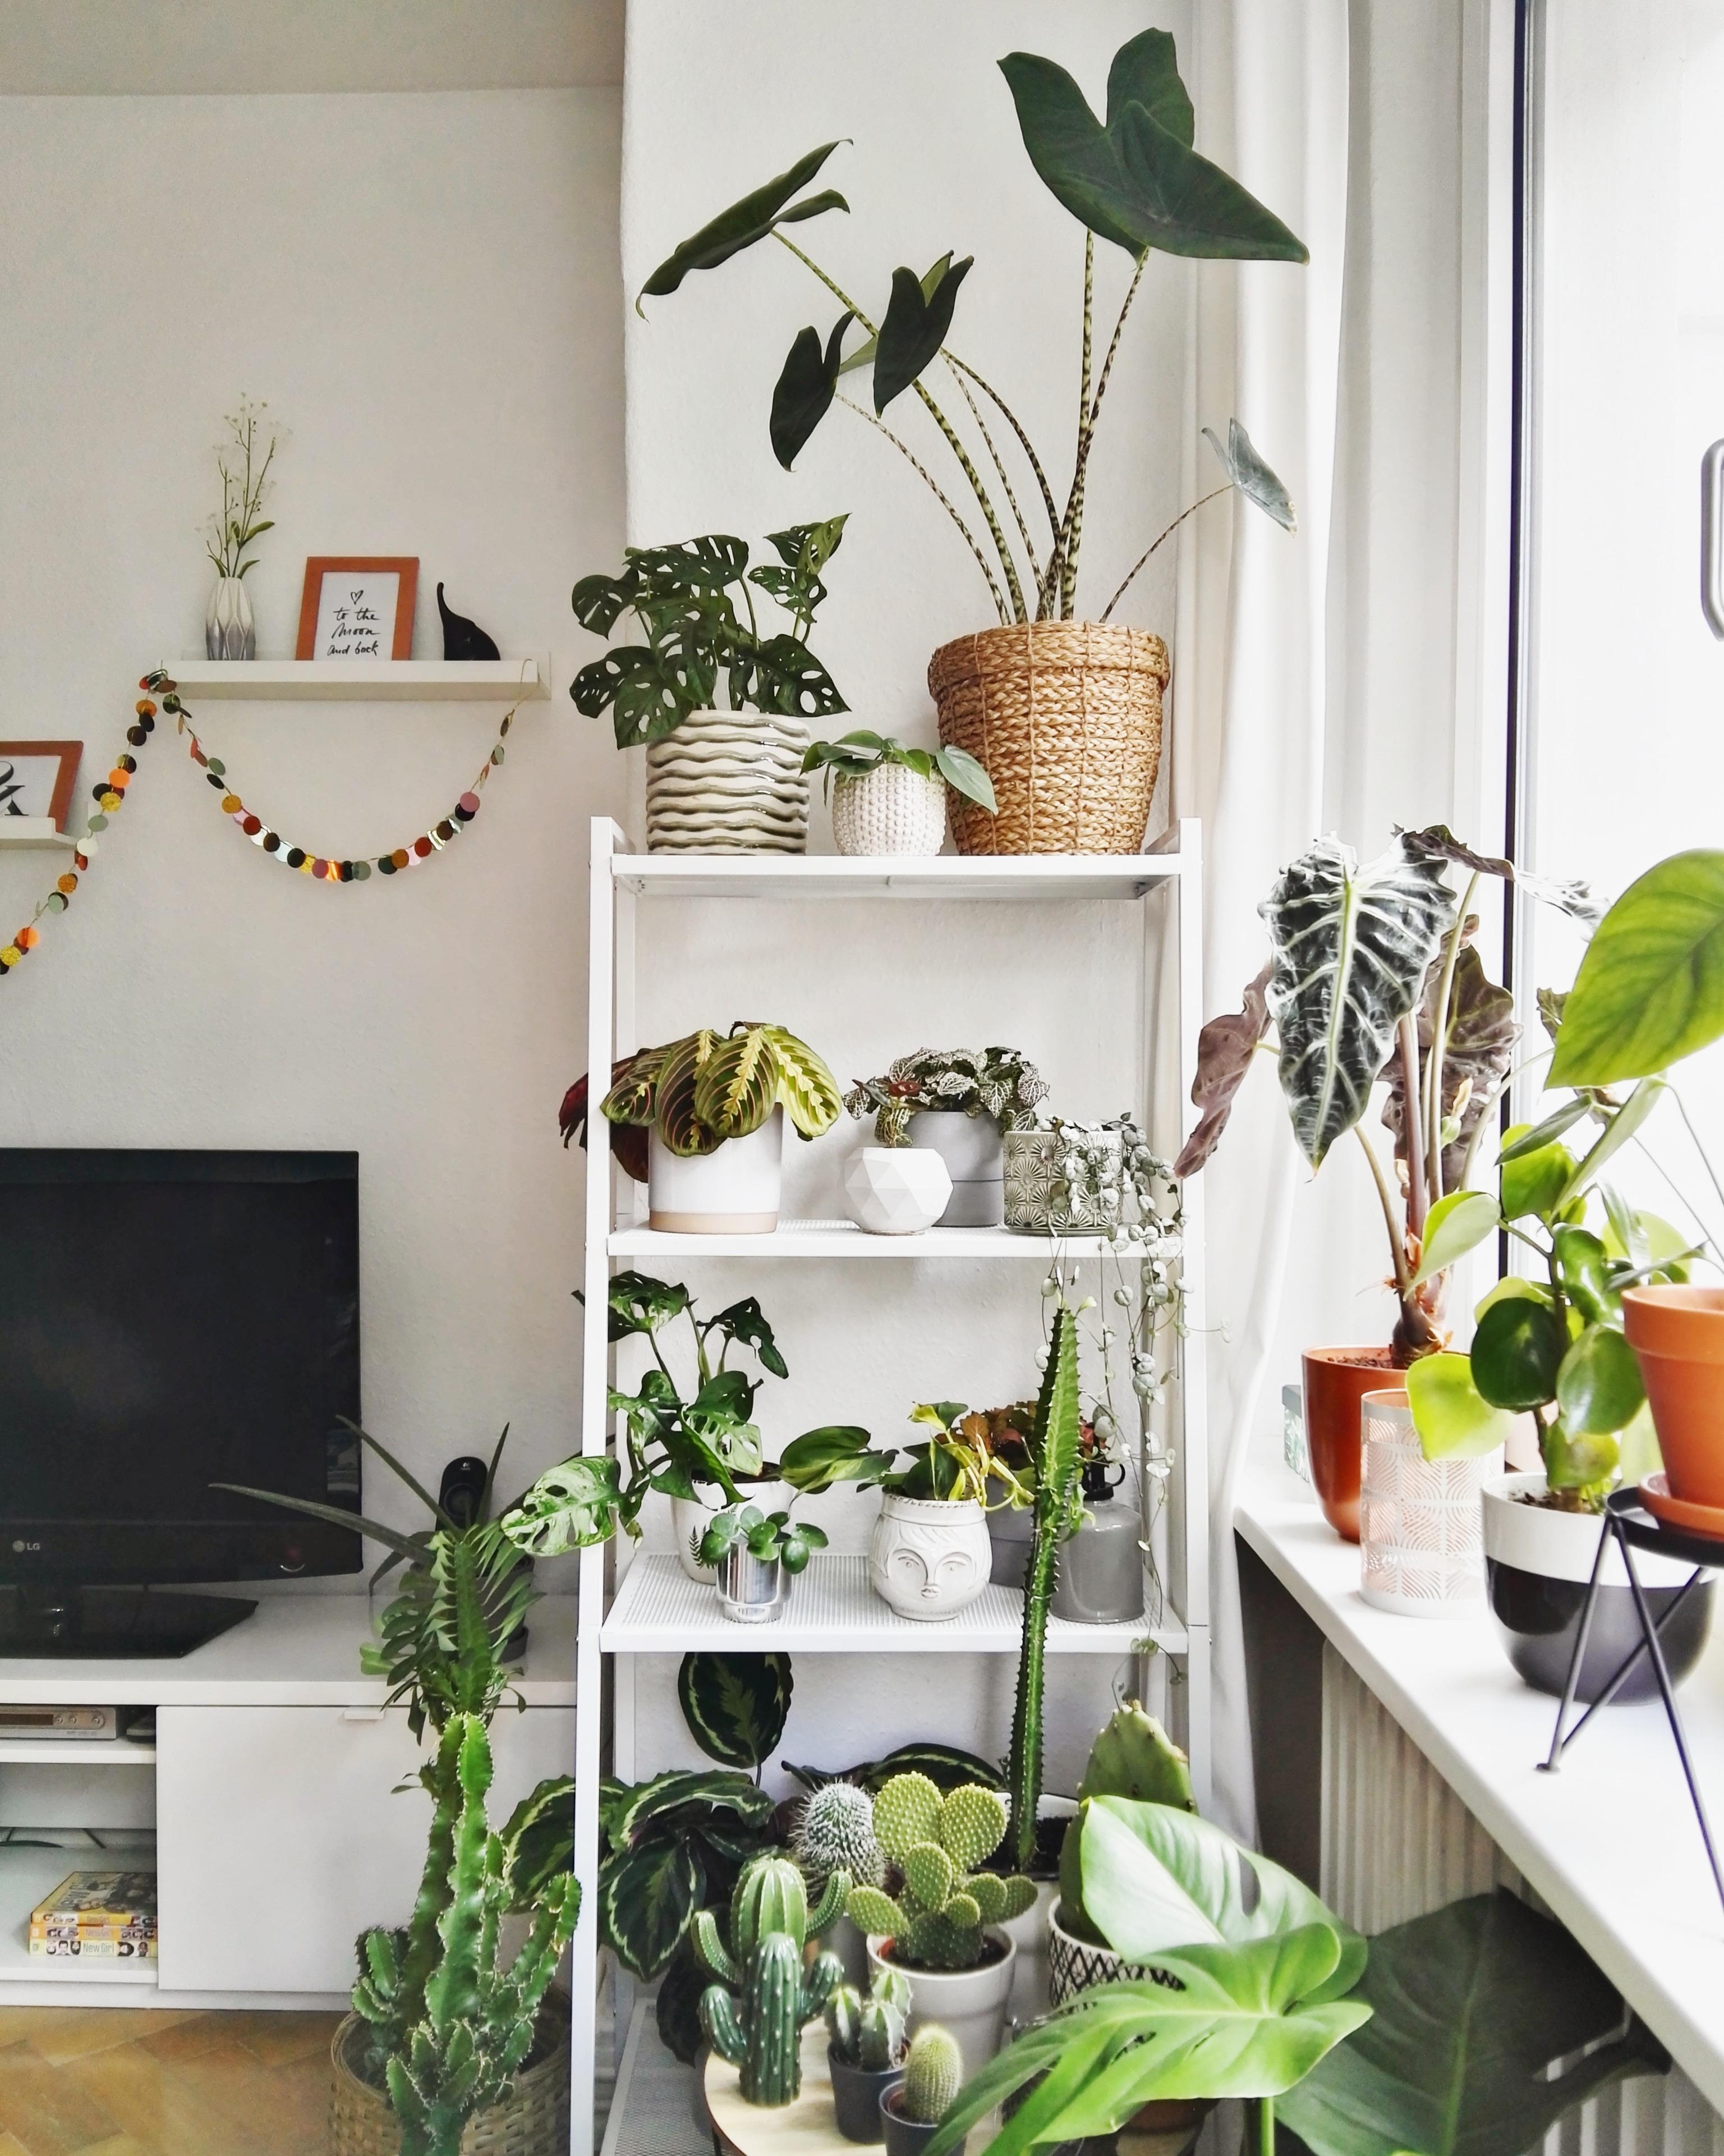 Neues Pflanzenregal #plantshelfie #interior #livingroom #urbanjungle #plantlover #plantgang #pflanzenliebe
